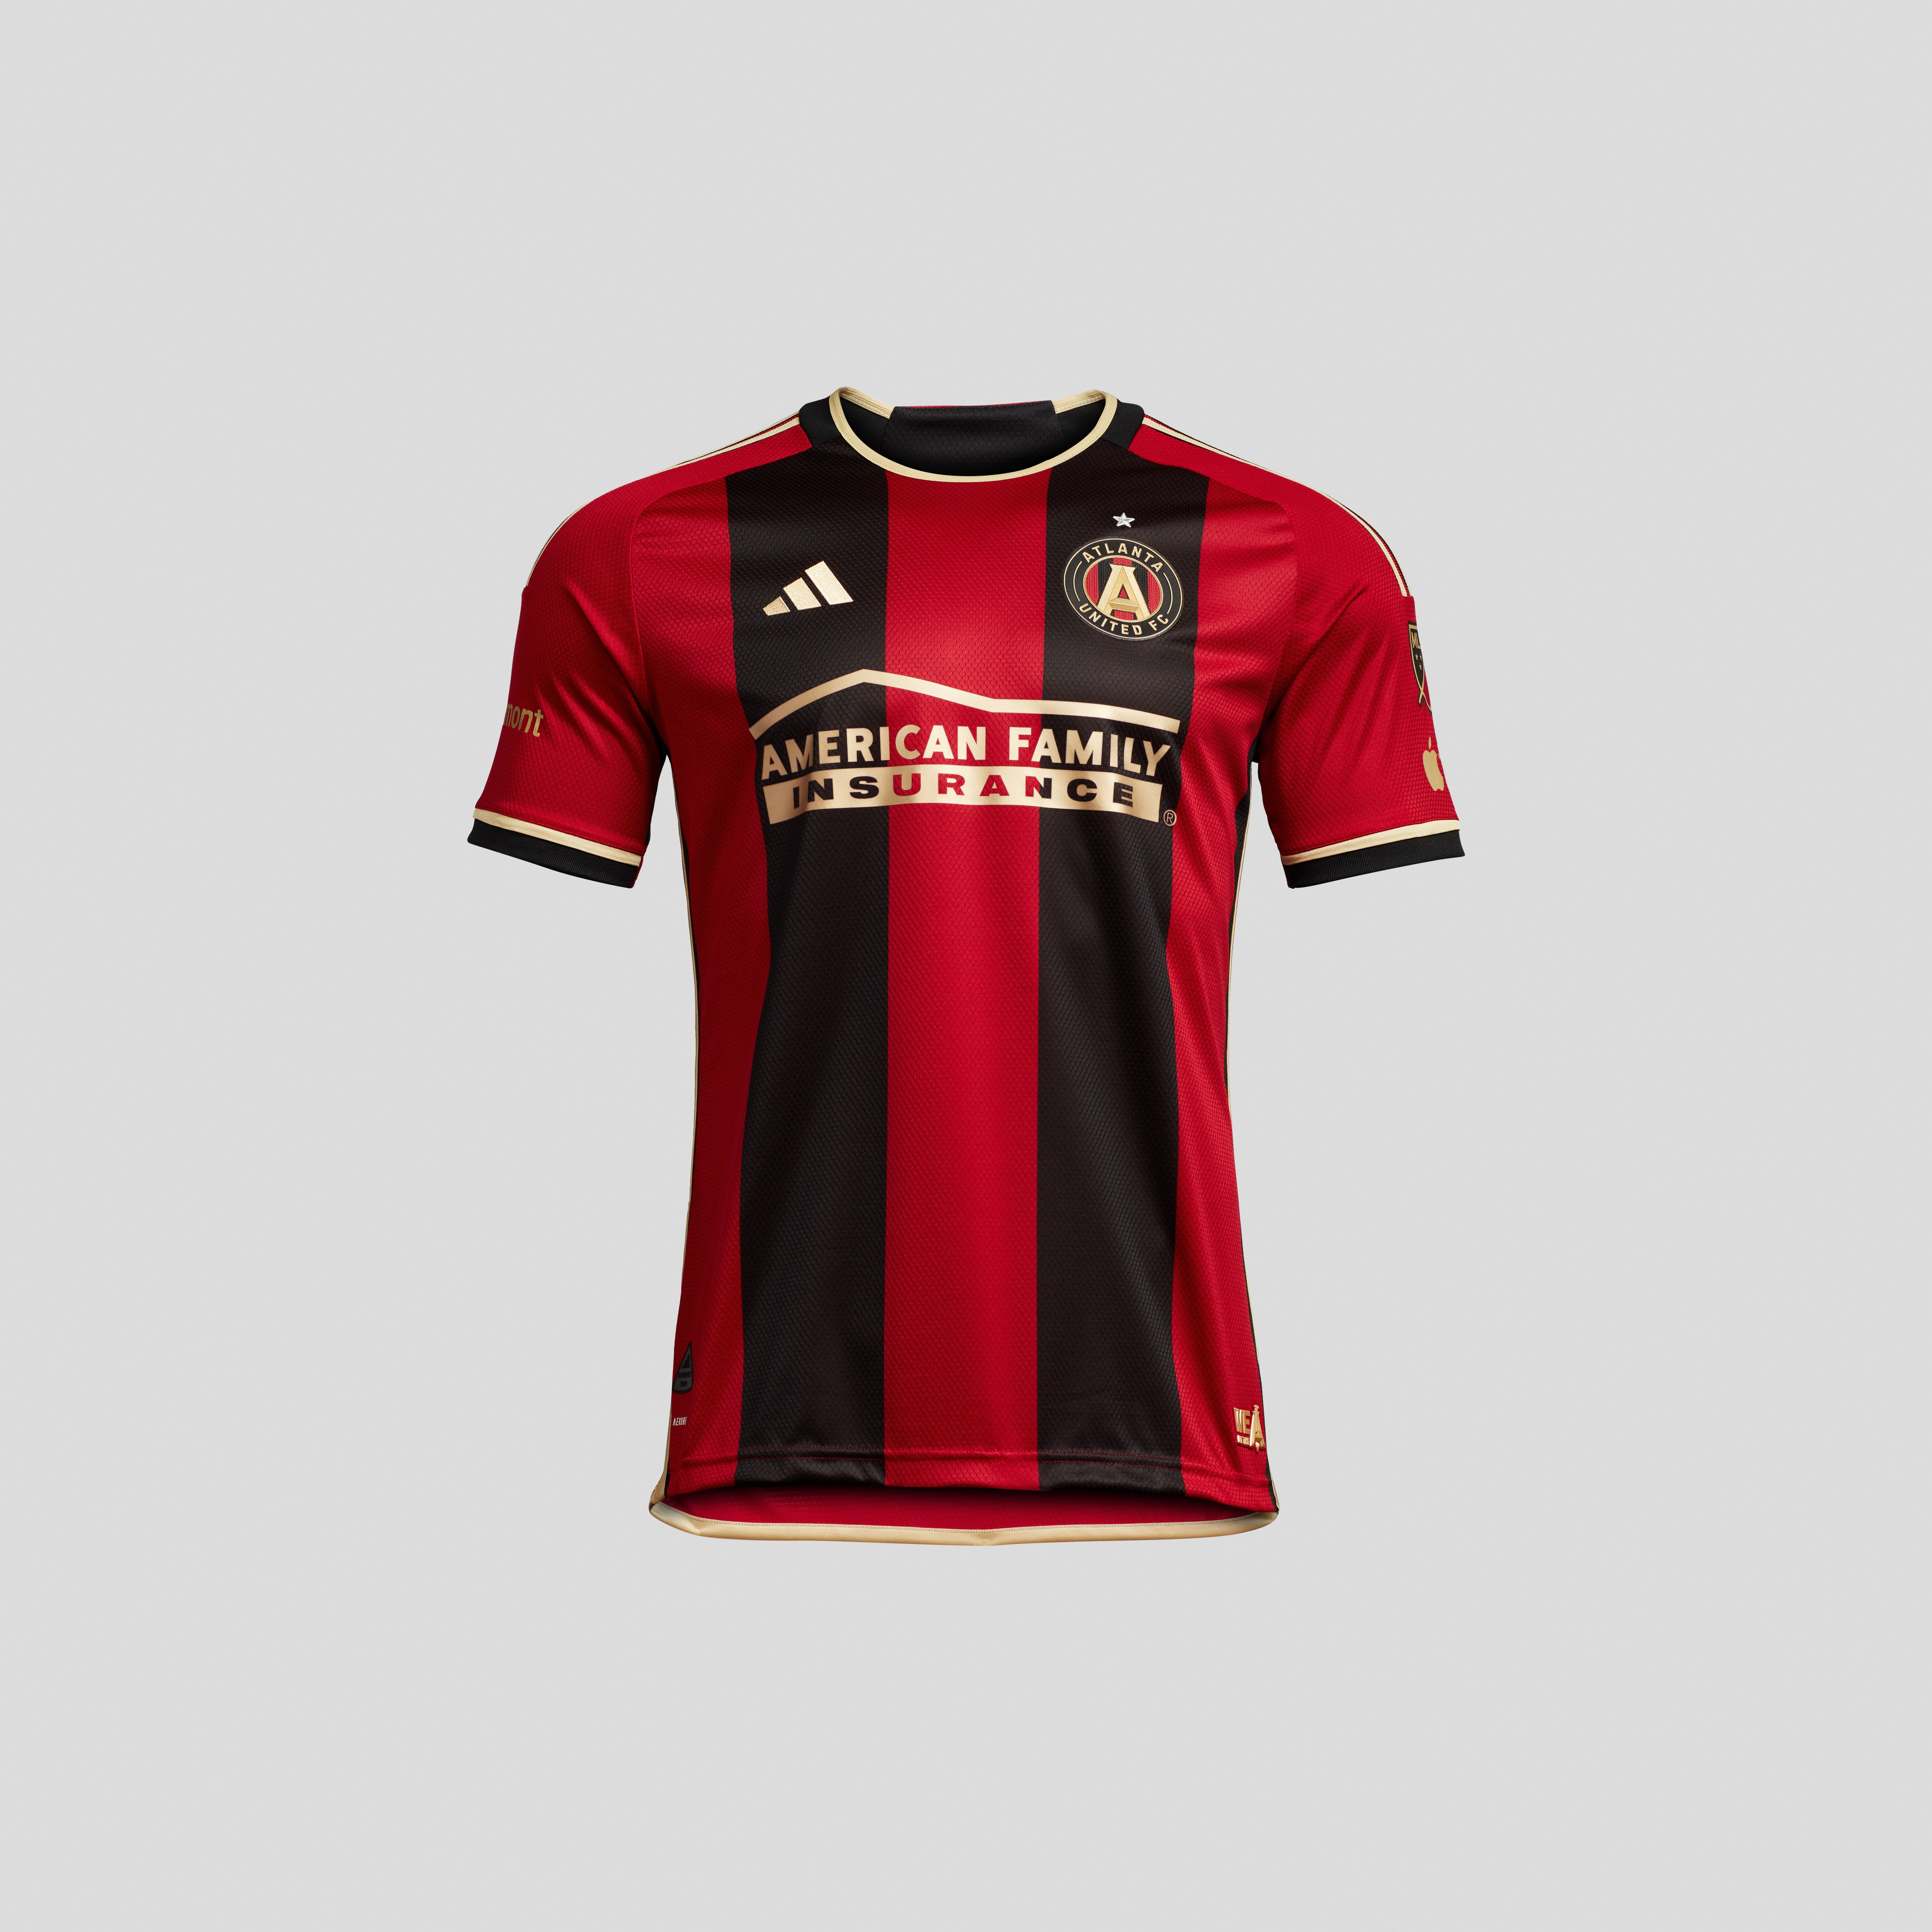 MLS Atlanta United FC 17s kit